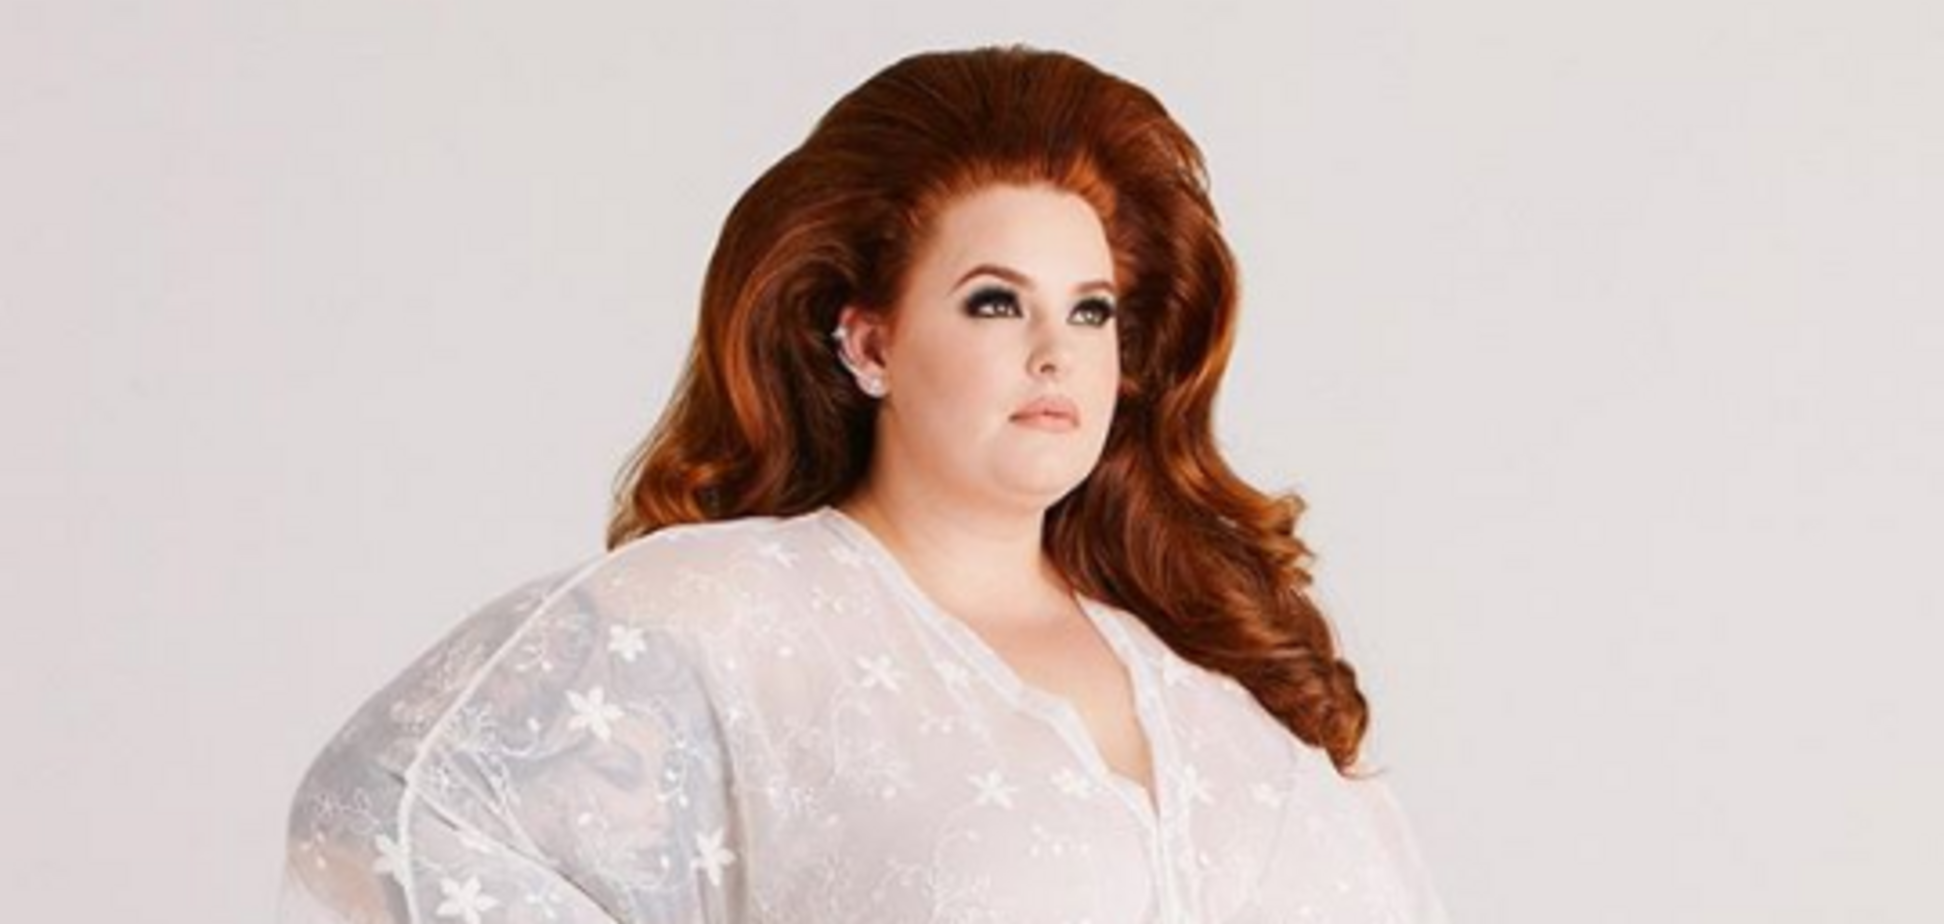 ''Я зла и напугана'': самая толстая в мире модель поделилась личной трагедией